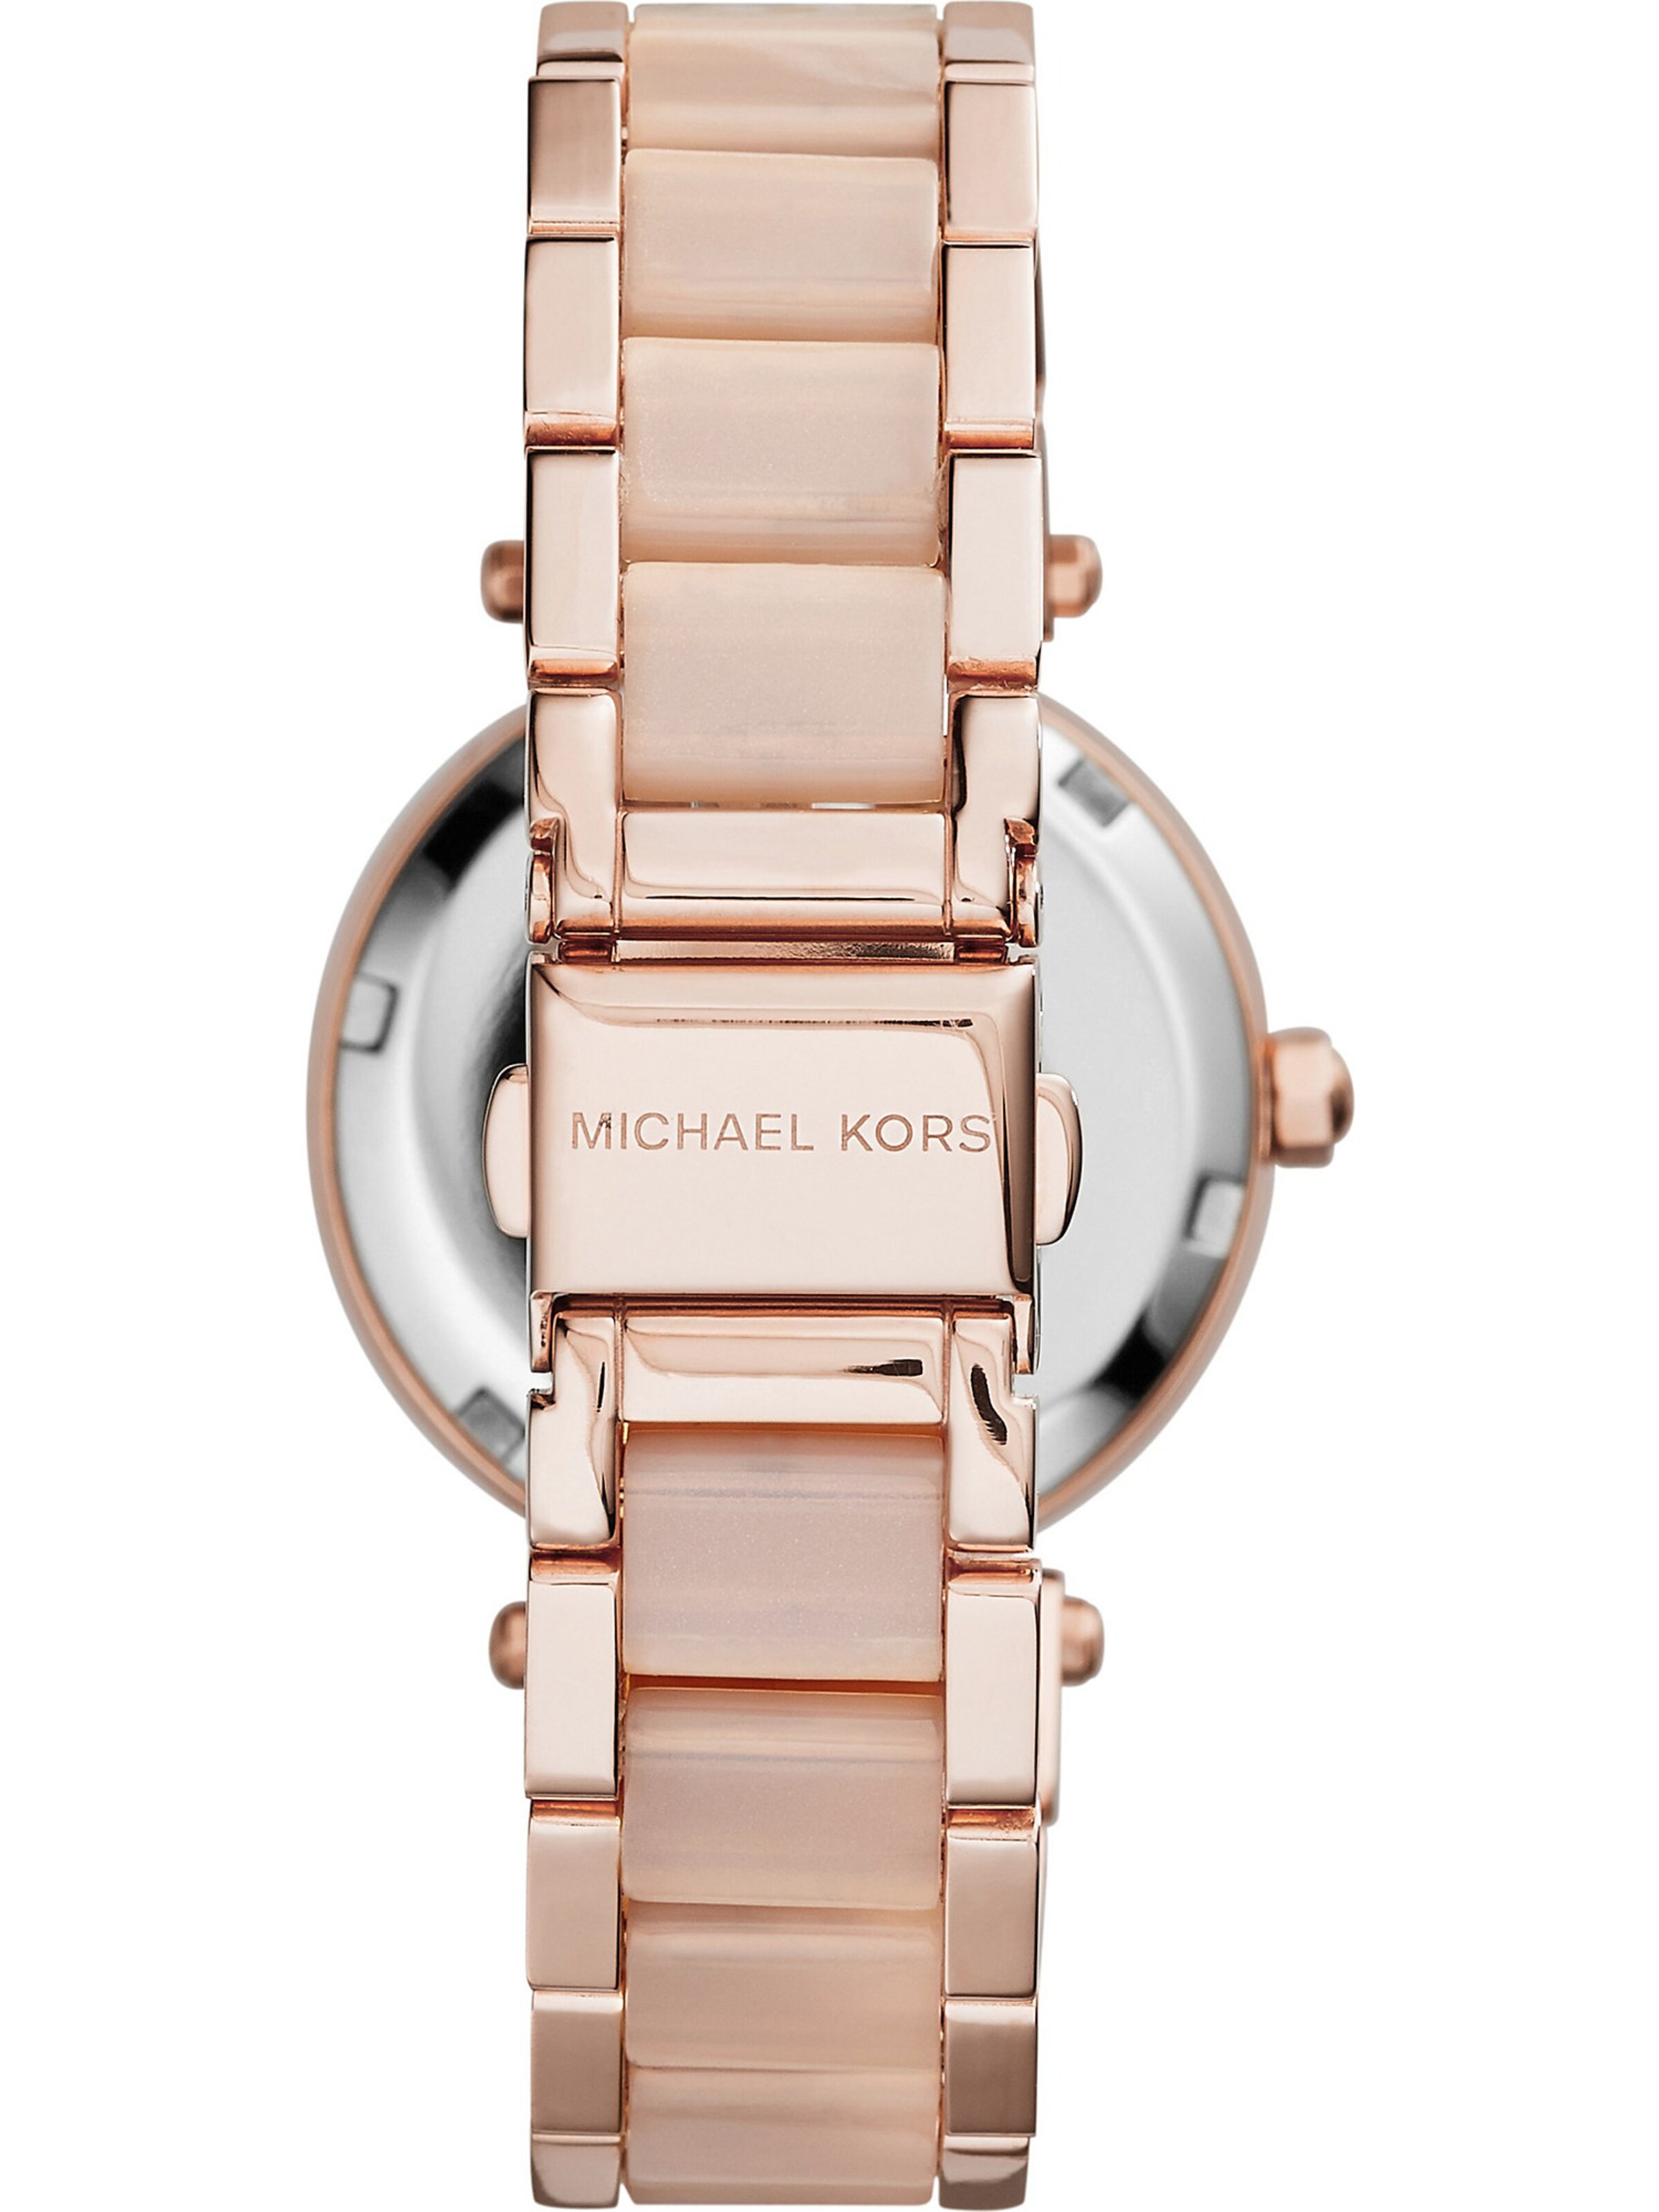 Frauen Uhren Michael Kors Uhr 'MK6110' in Rosegold - AK96640